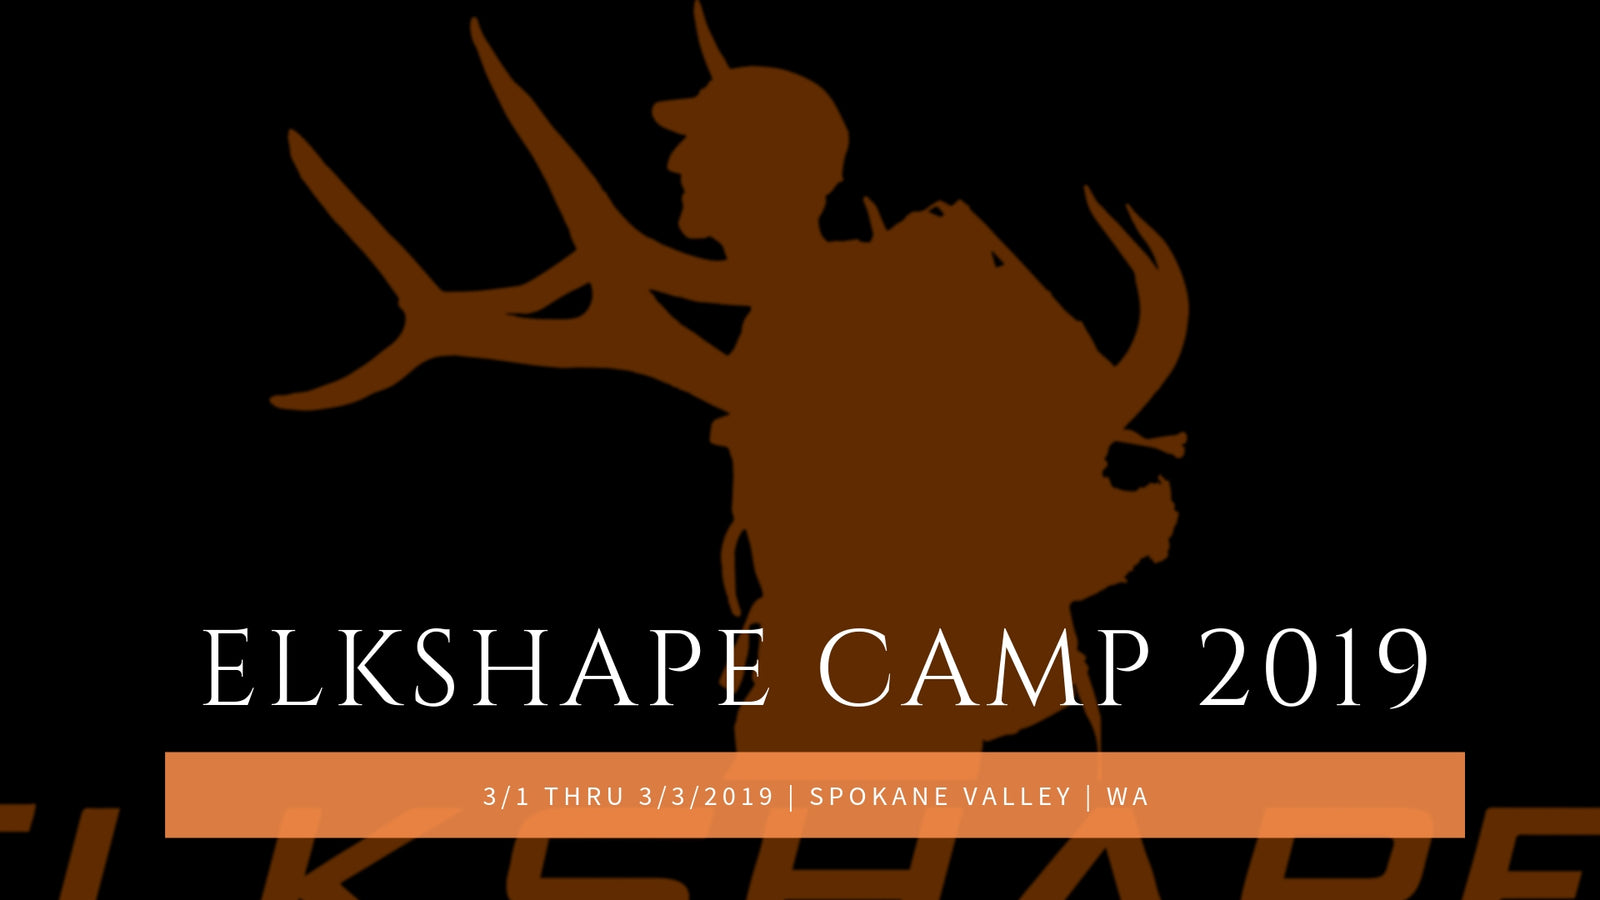 ElkShape Camp 2019 Video Update